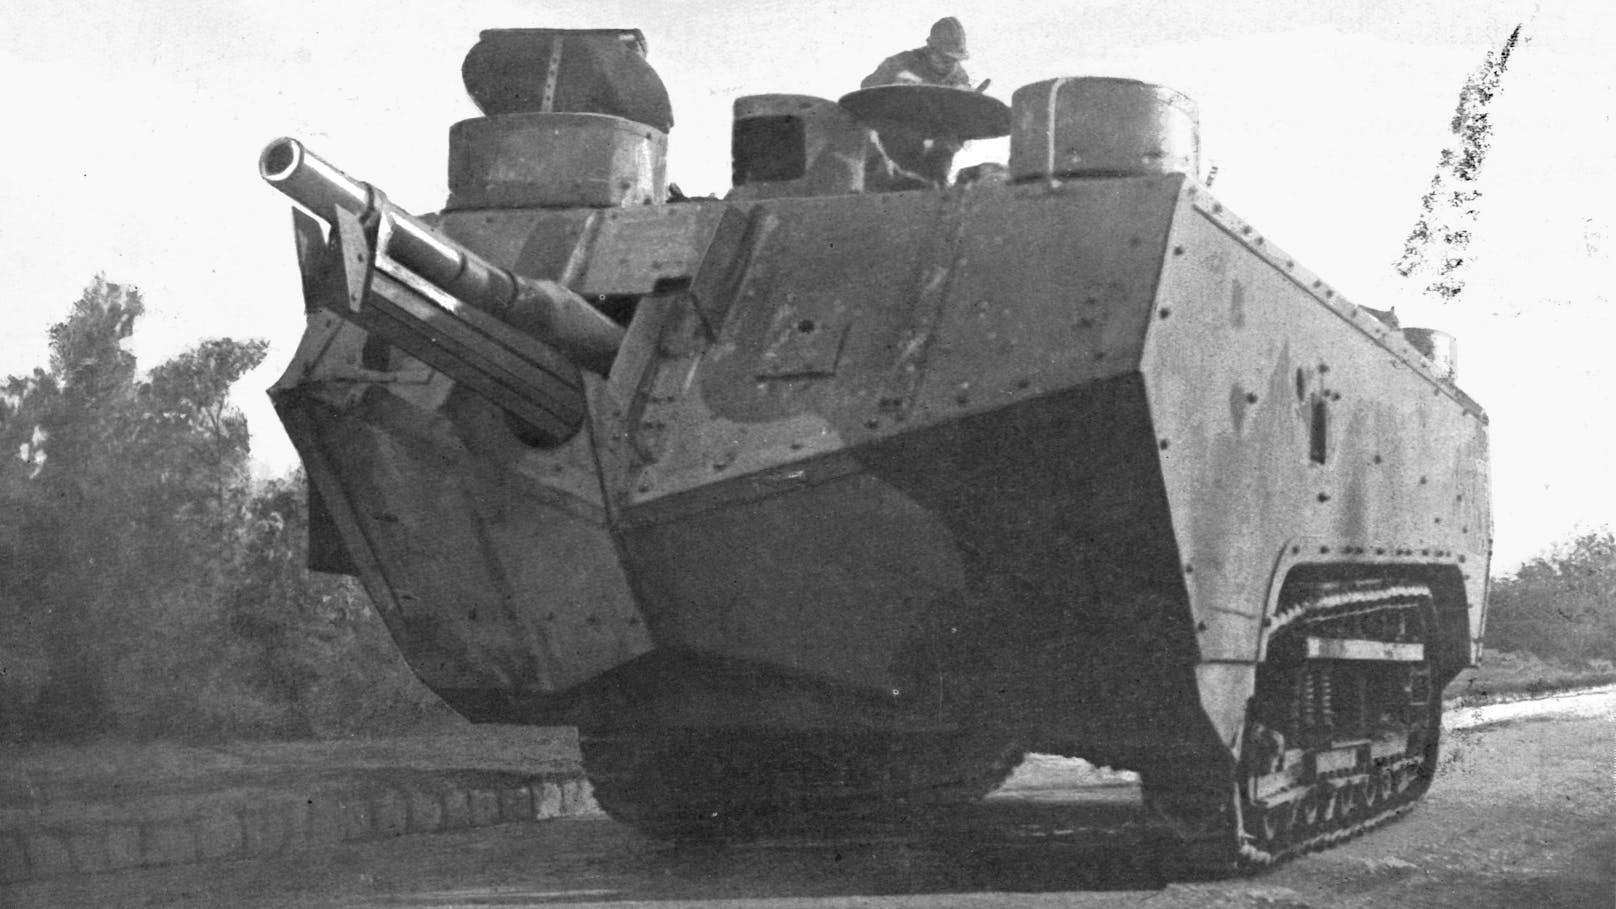 Ein französischer Panzer vom Typ Saint-Chamond aus der Ära des Ersten Weltkriegs 1914 bis 1918. Nach mehr als einhundert Jahren Fortschritts sehen russische Panzer wieder ähnlich aus.